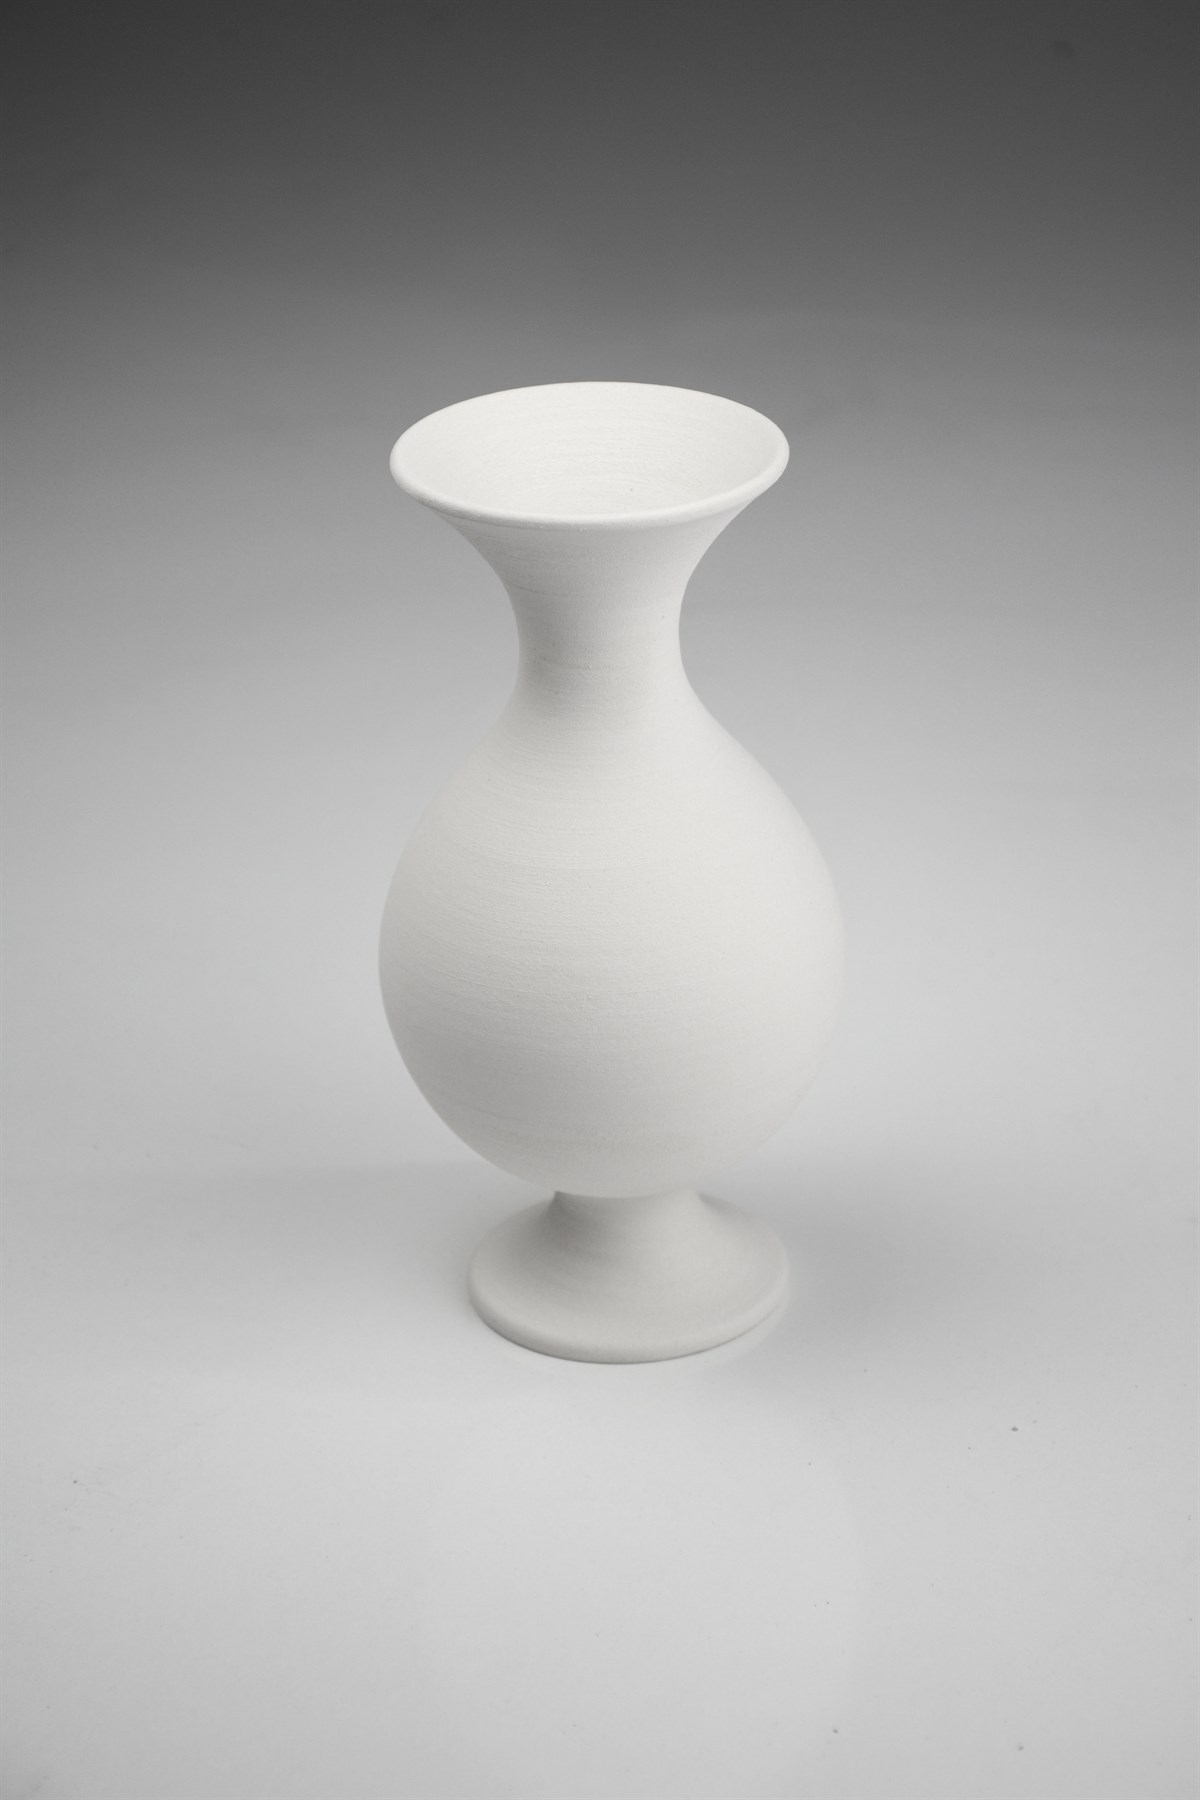 Legged Hyacinth Vase Ceramic Bisque